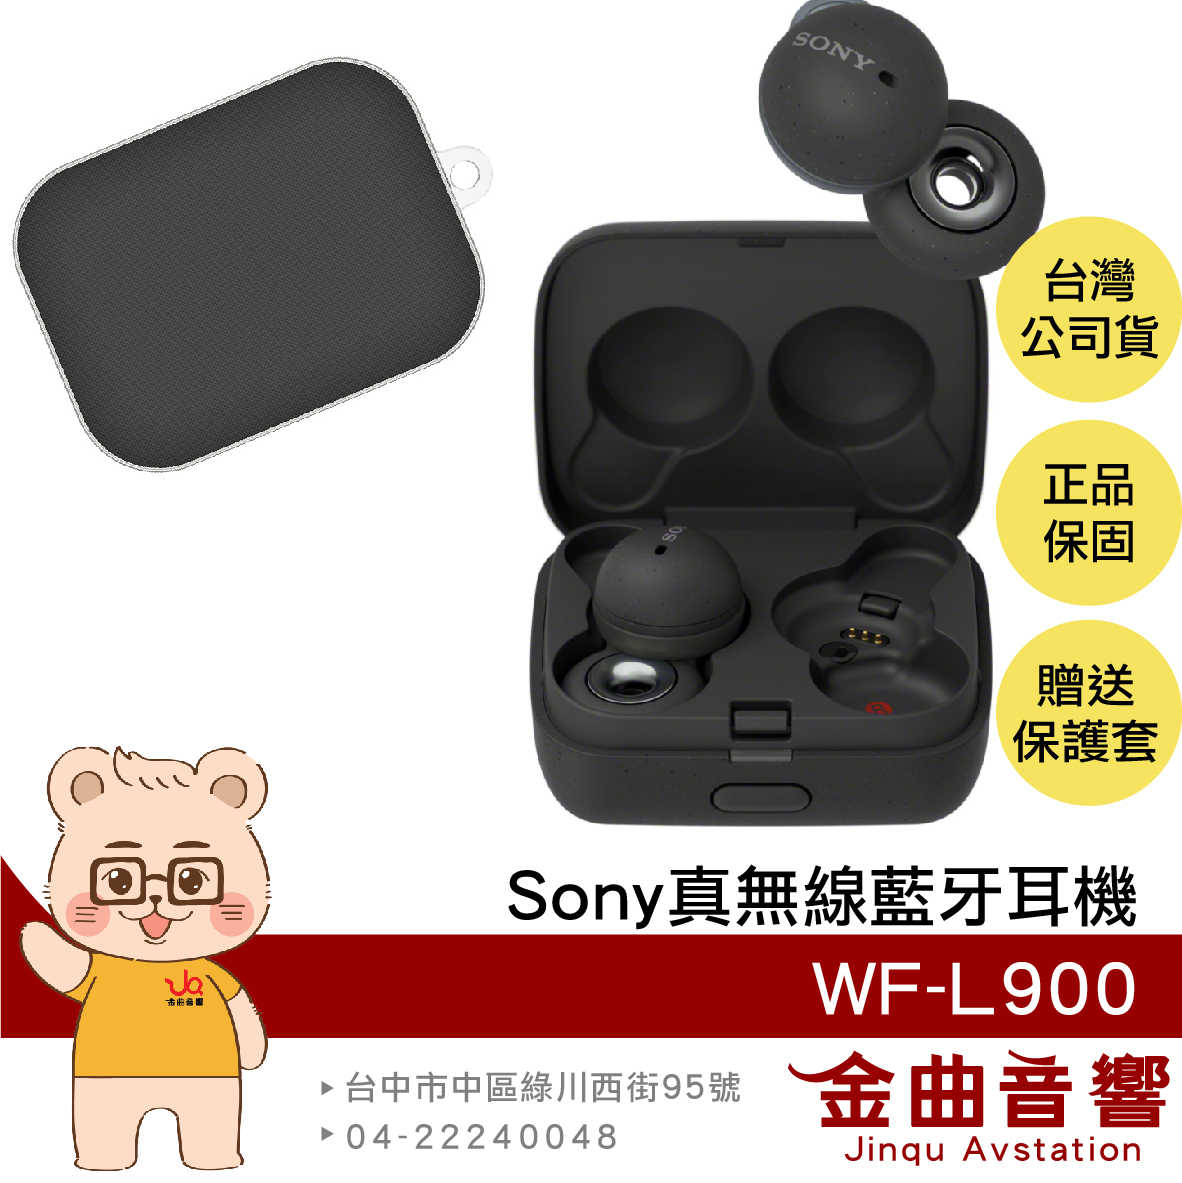 【現貨】SONY 索尼 WF-L900 黑色 贈保護套 LinkBuds 主動降噪 開放式 真無線 藍芽耳機 | 金曲音響